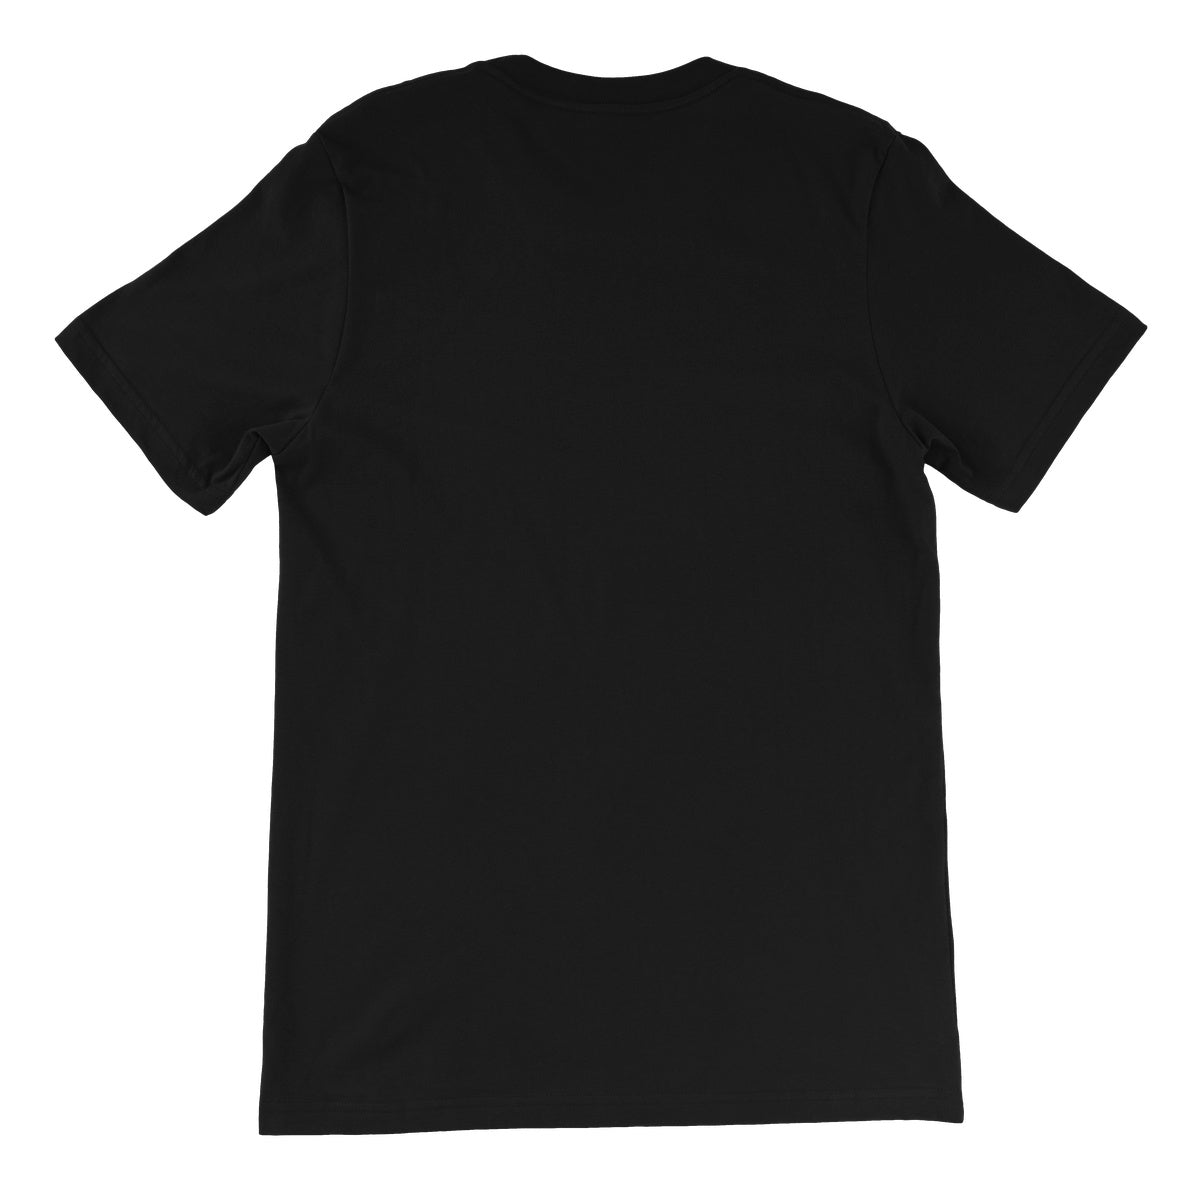 TNT Extreme Wrestling Skater Unisex Short Sleeve T-Shirt